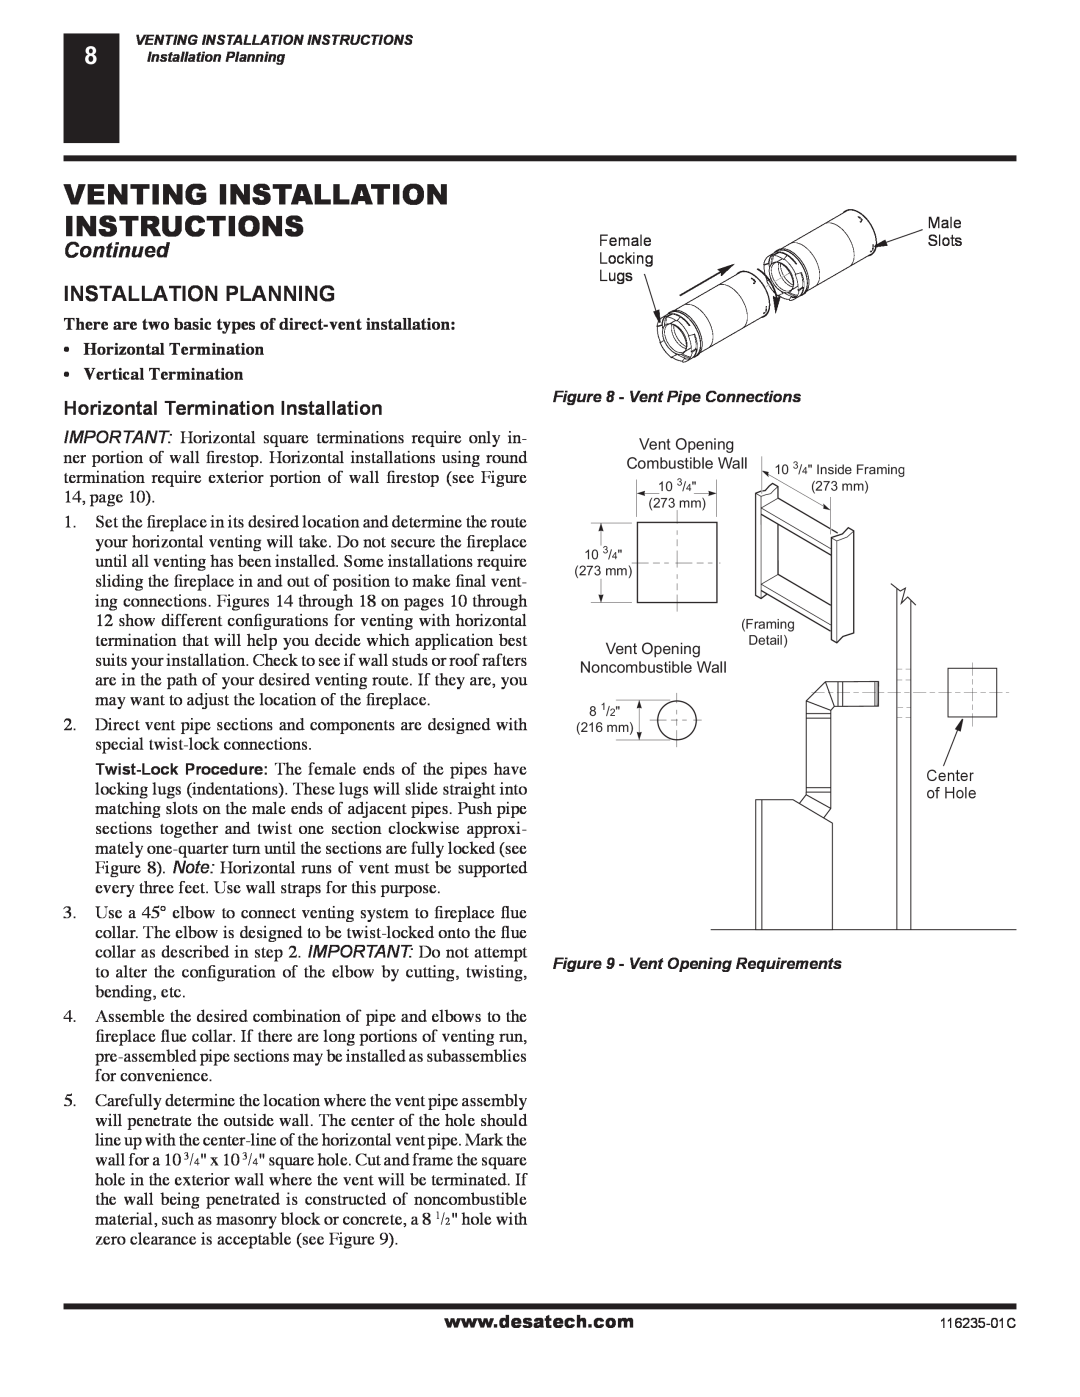 Desa (V)VC36NE Venting Installation Instructions, Continued, Installation Planning, Horizontal Termination Installation 